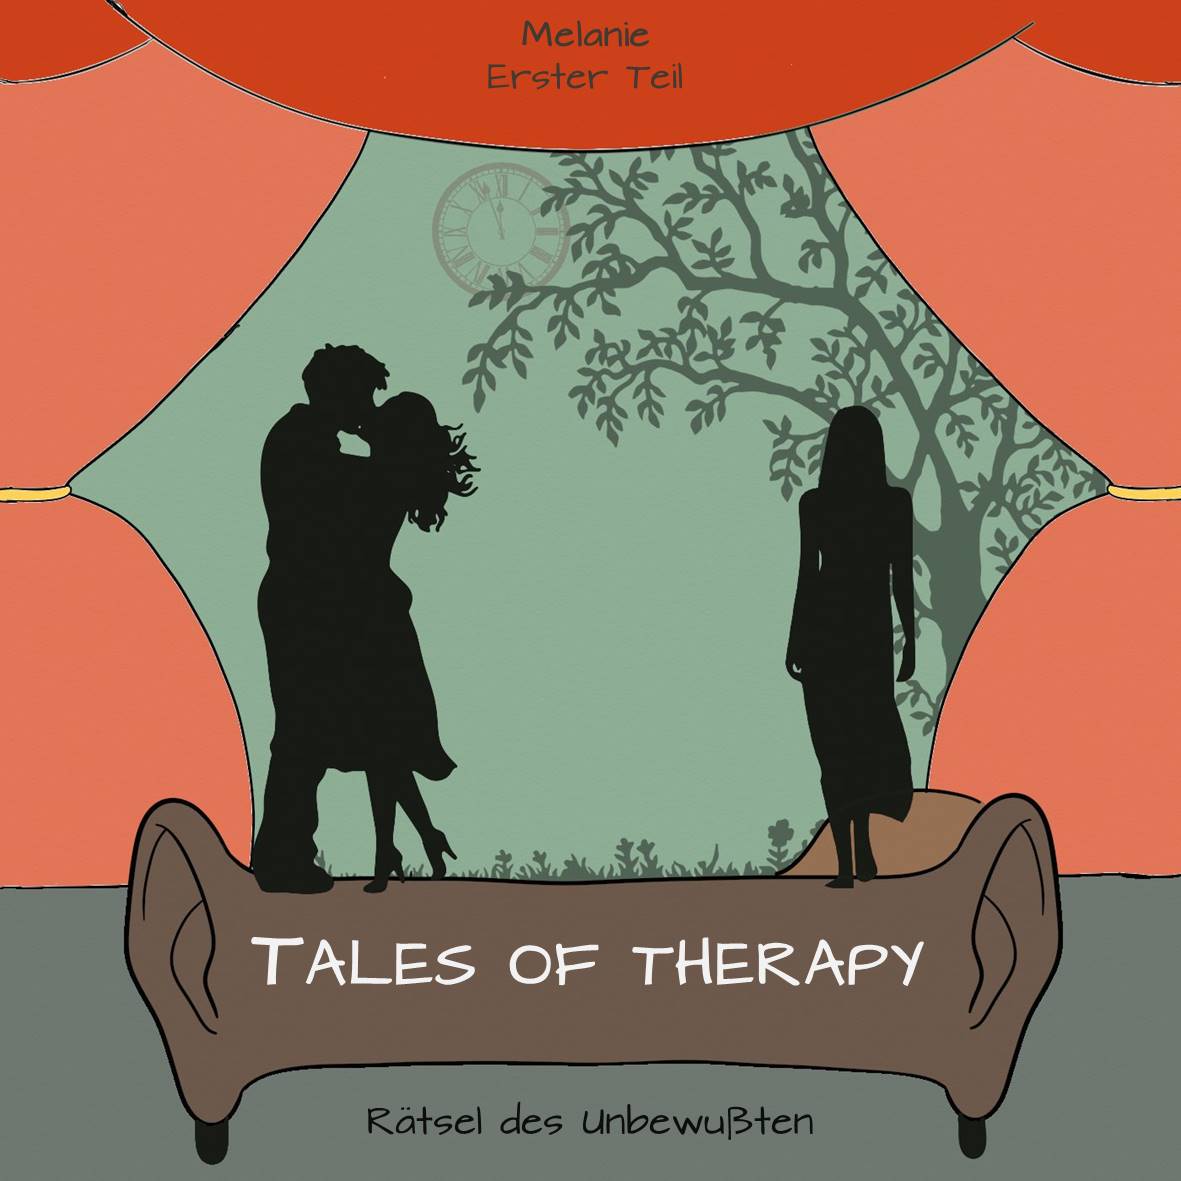 Tales of Therapy – Melanie. Oder: Trauer in Zeiten von Corona. Erster Teil